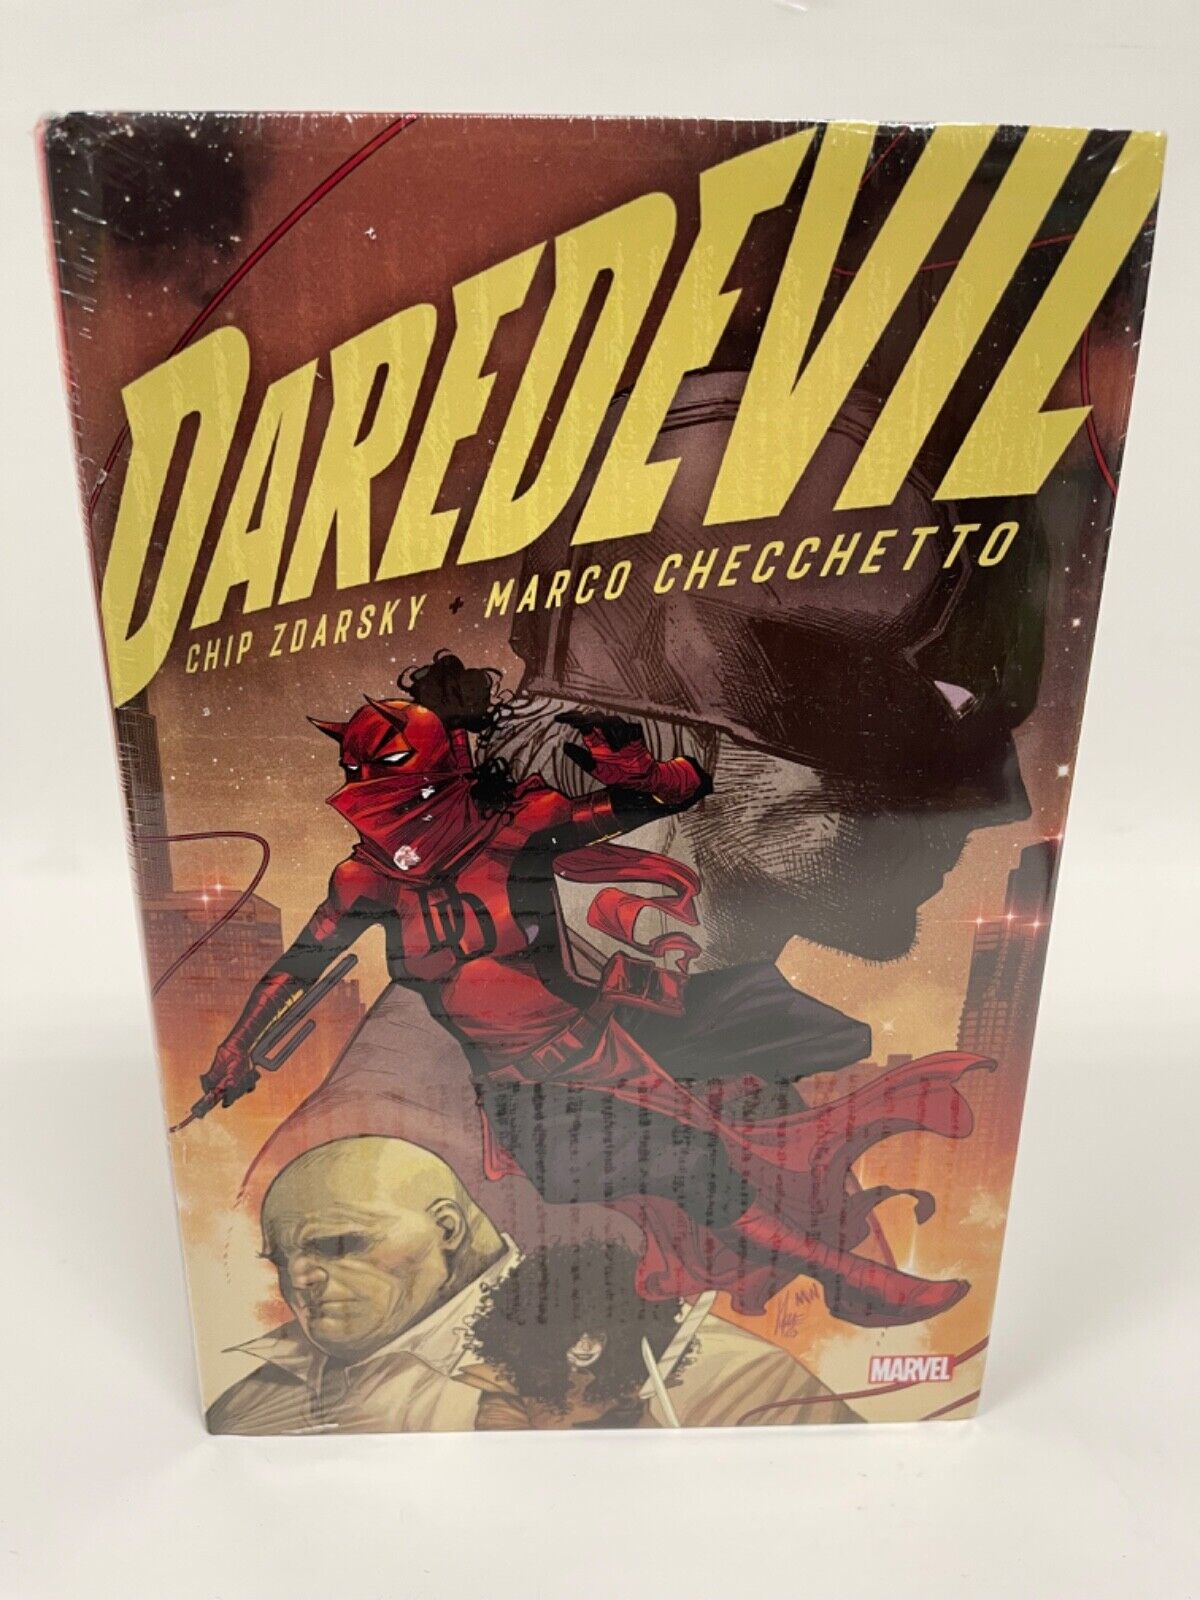 Daredevil by Chip Zdarsky Omnibus Vol 1 Checchetto DM COVER Marvel HC Hardcover